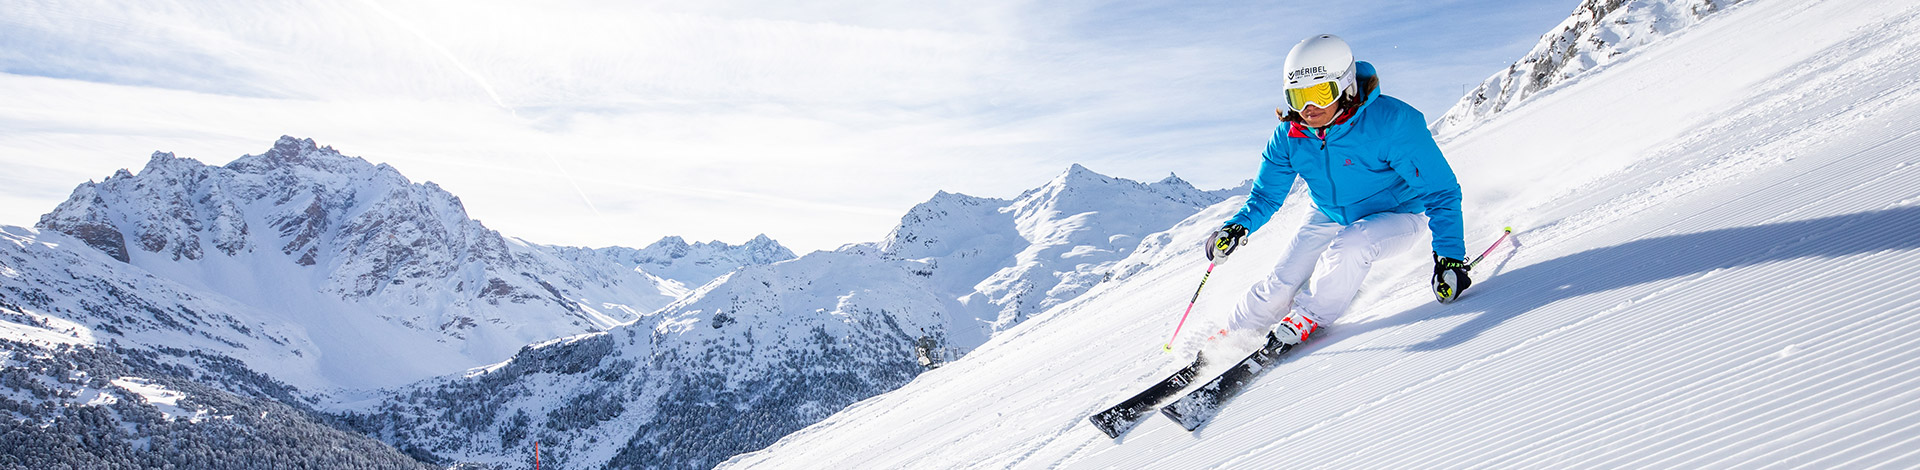 Méribel Profitez du grand ski dans Les 3 Vallées grâce au pass saison illimité